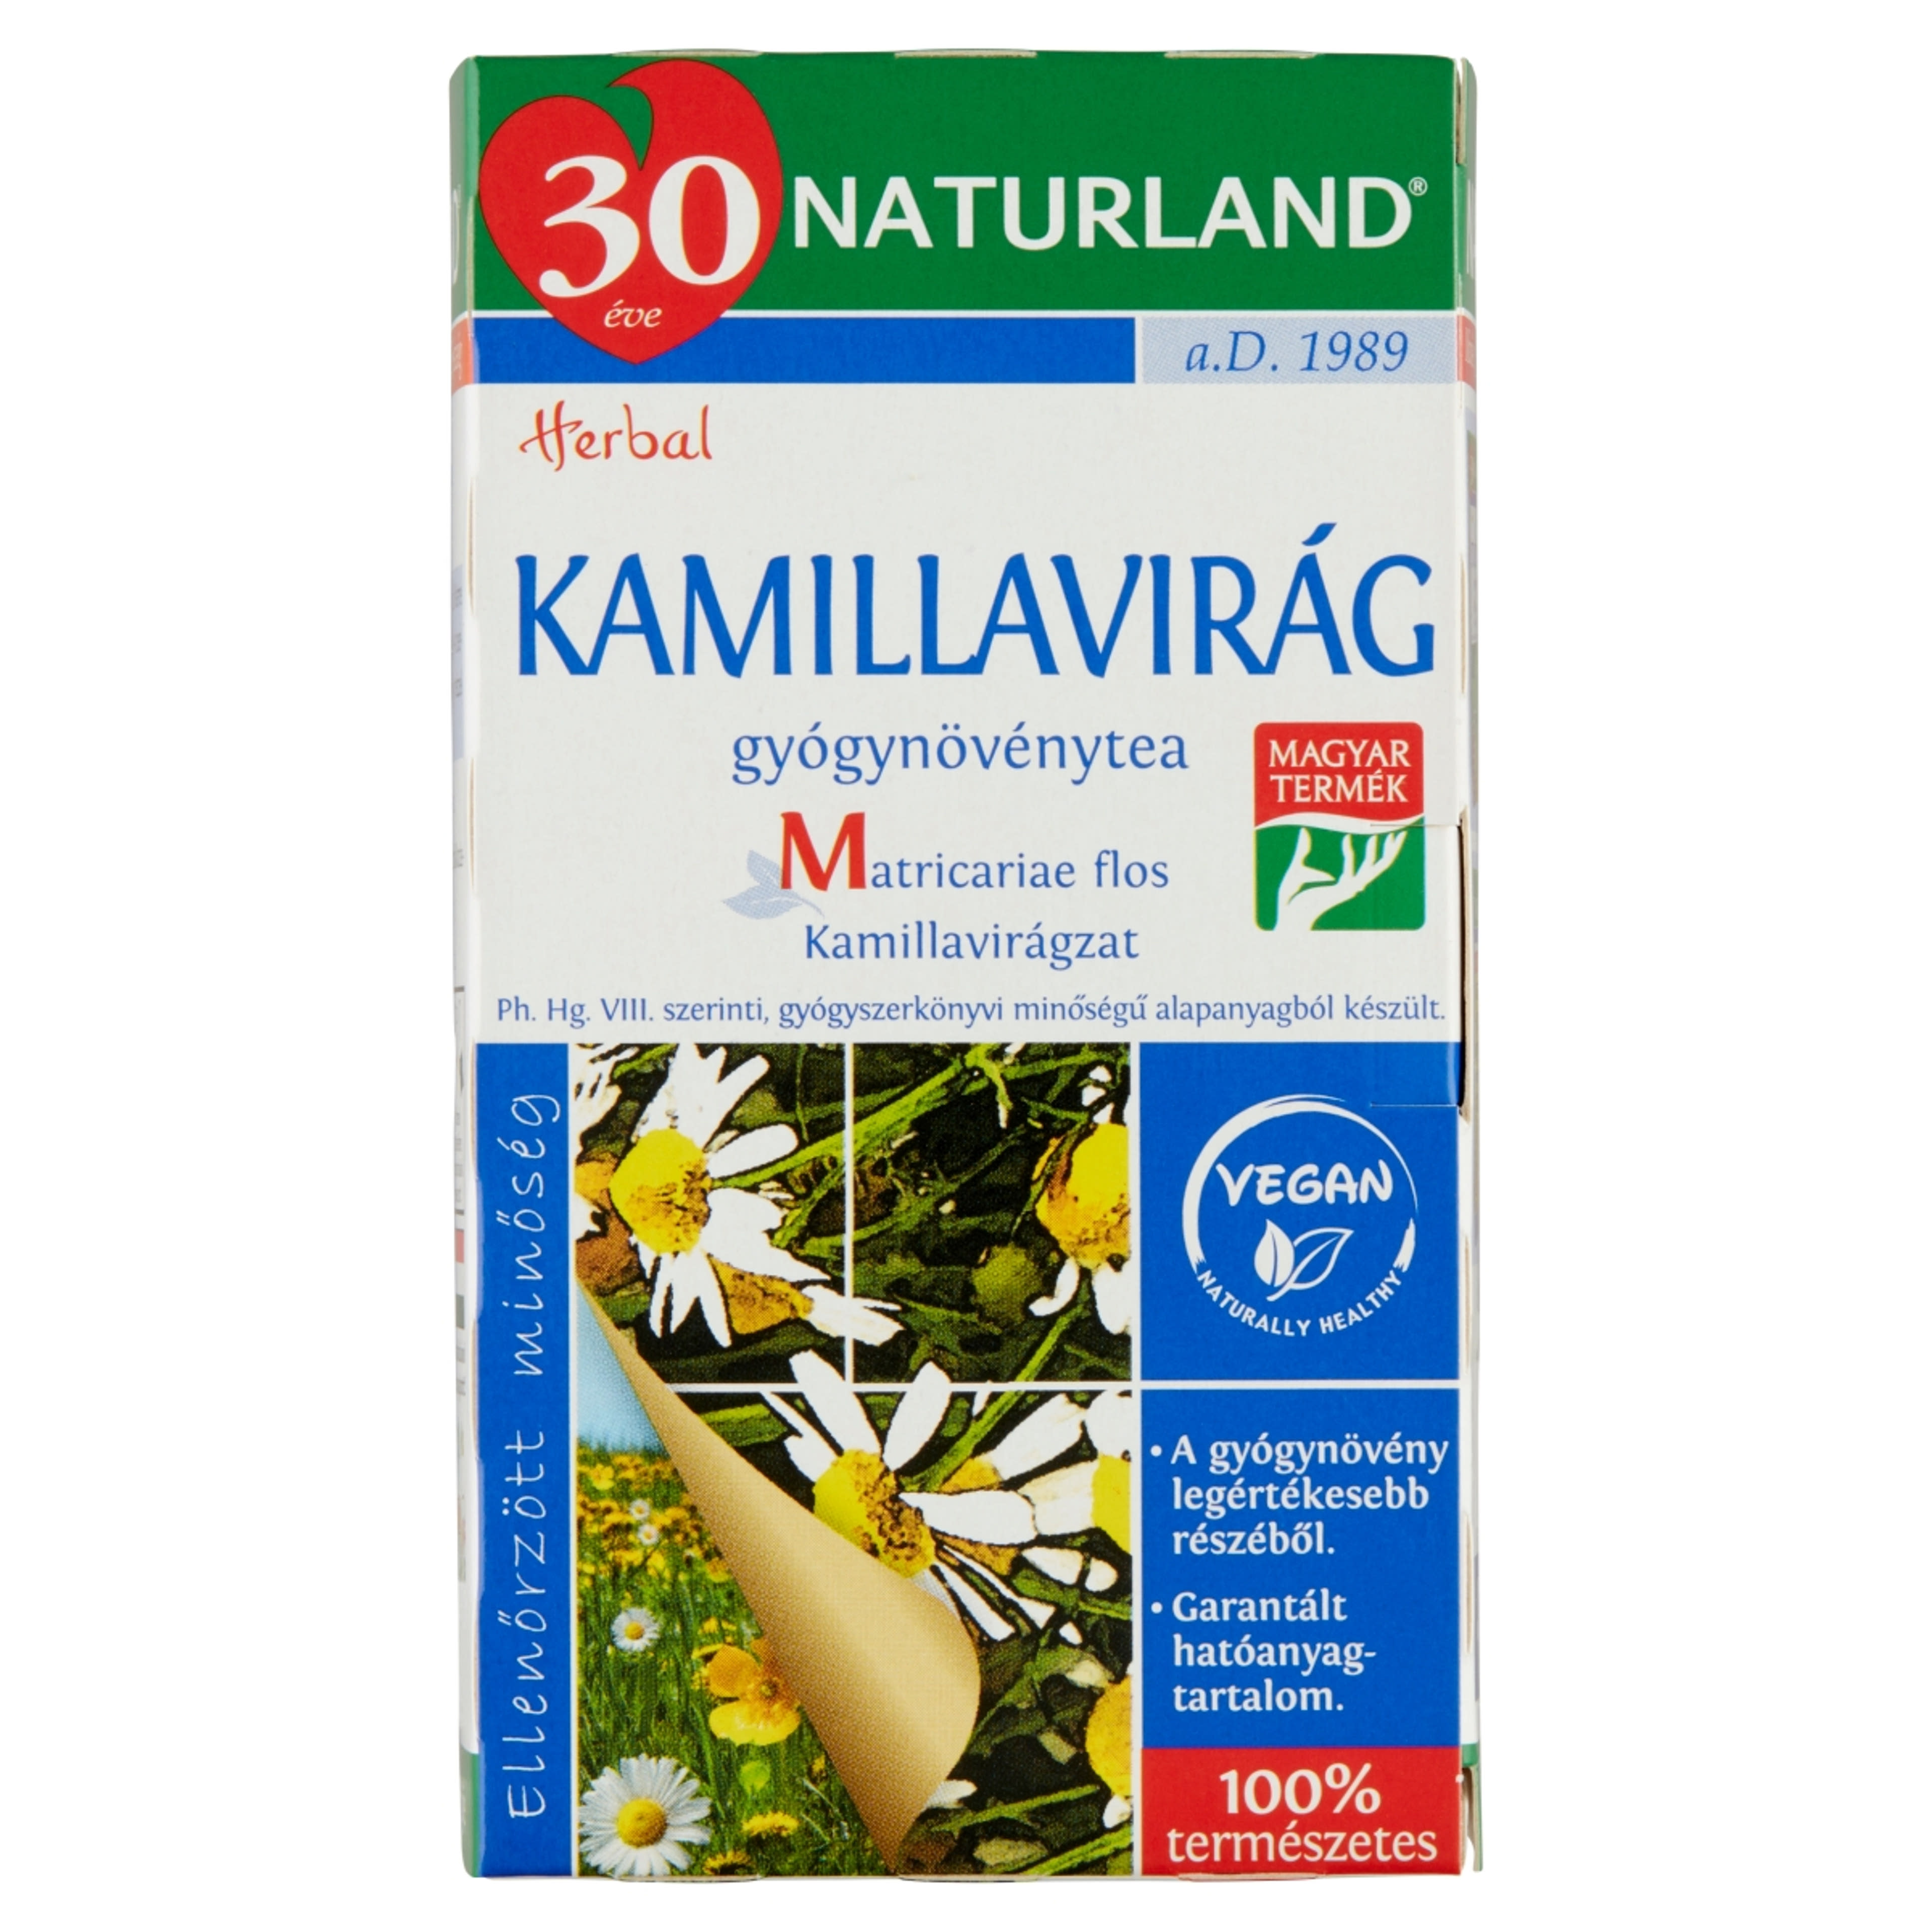 Naturland Herbal kamillavirág tea - 20 filter - 28 g